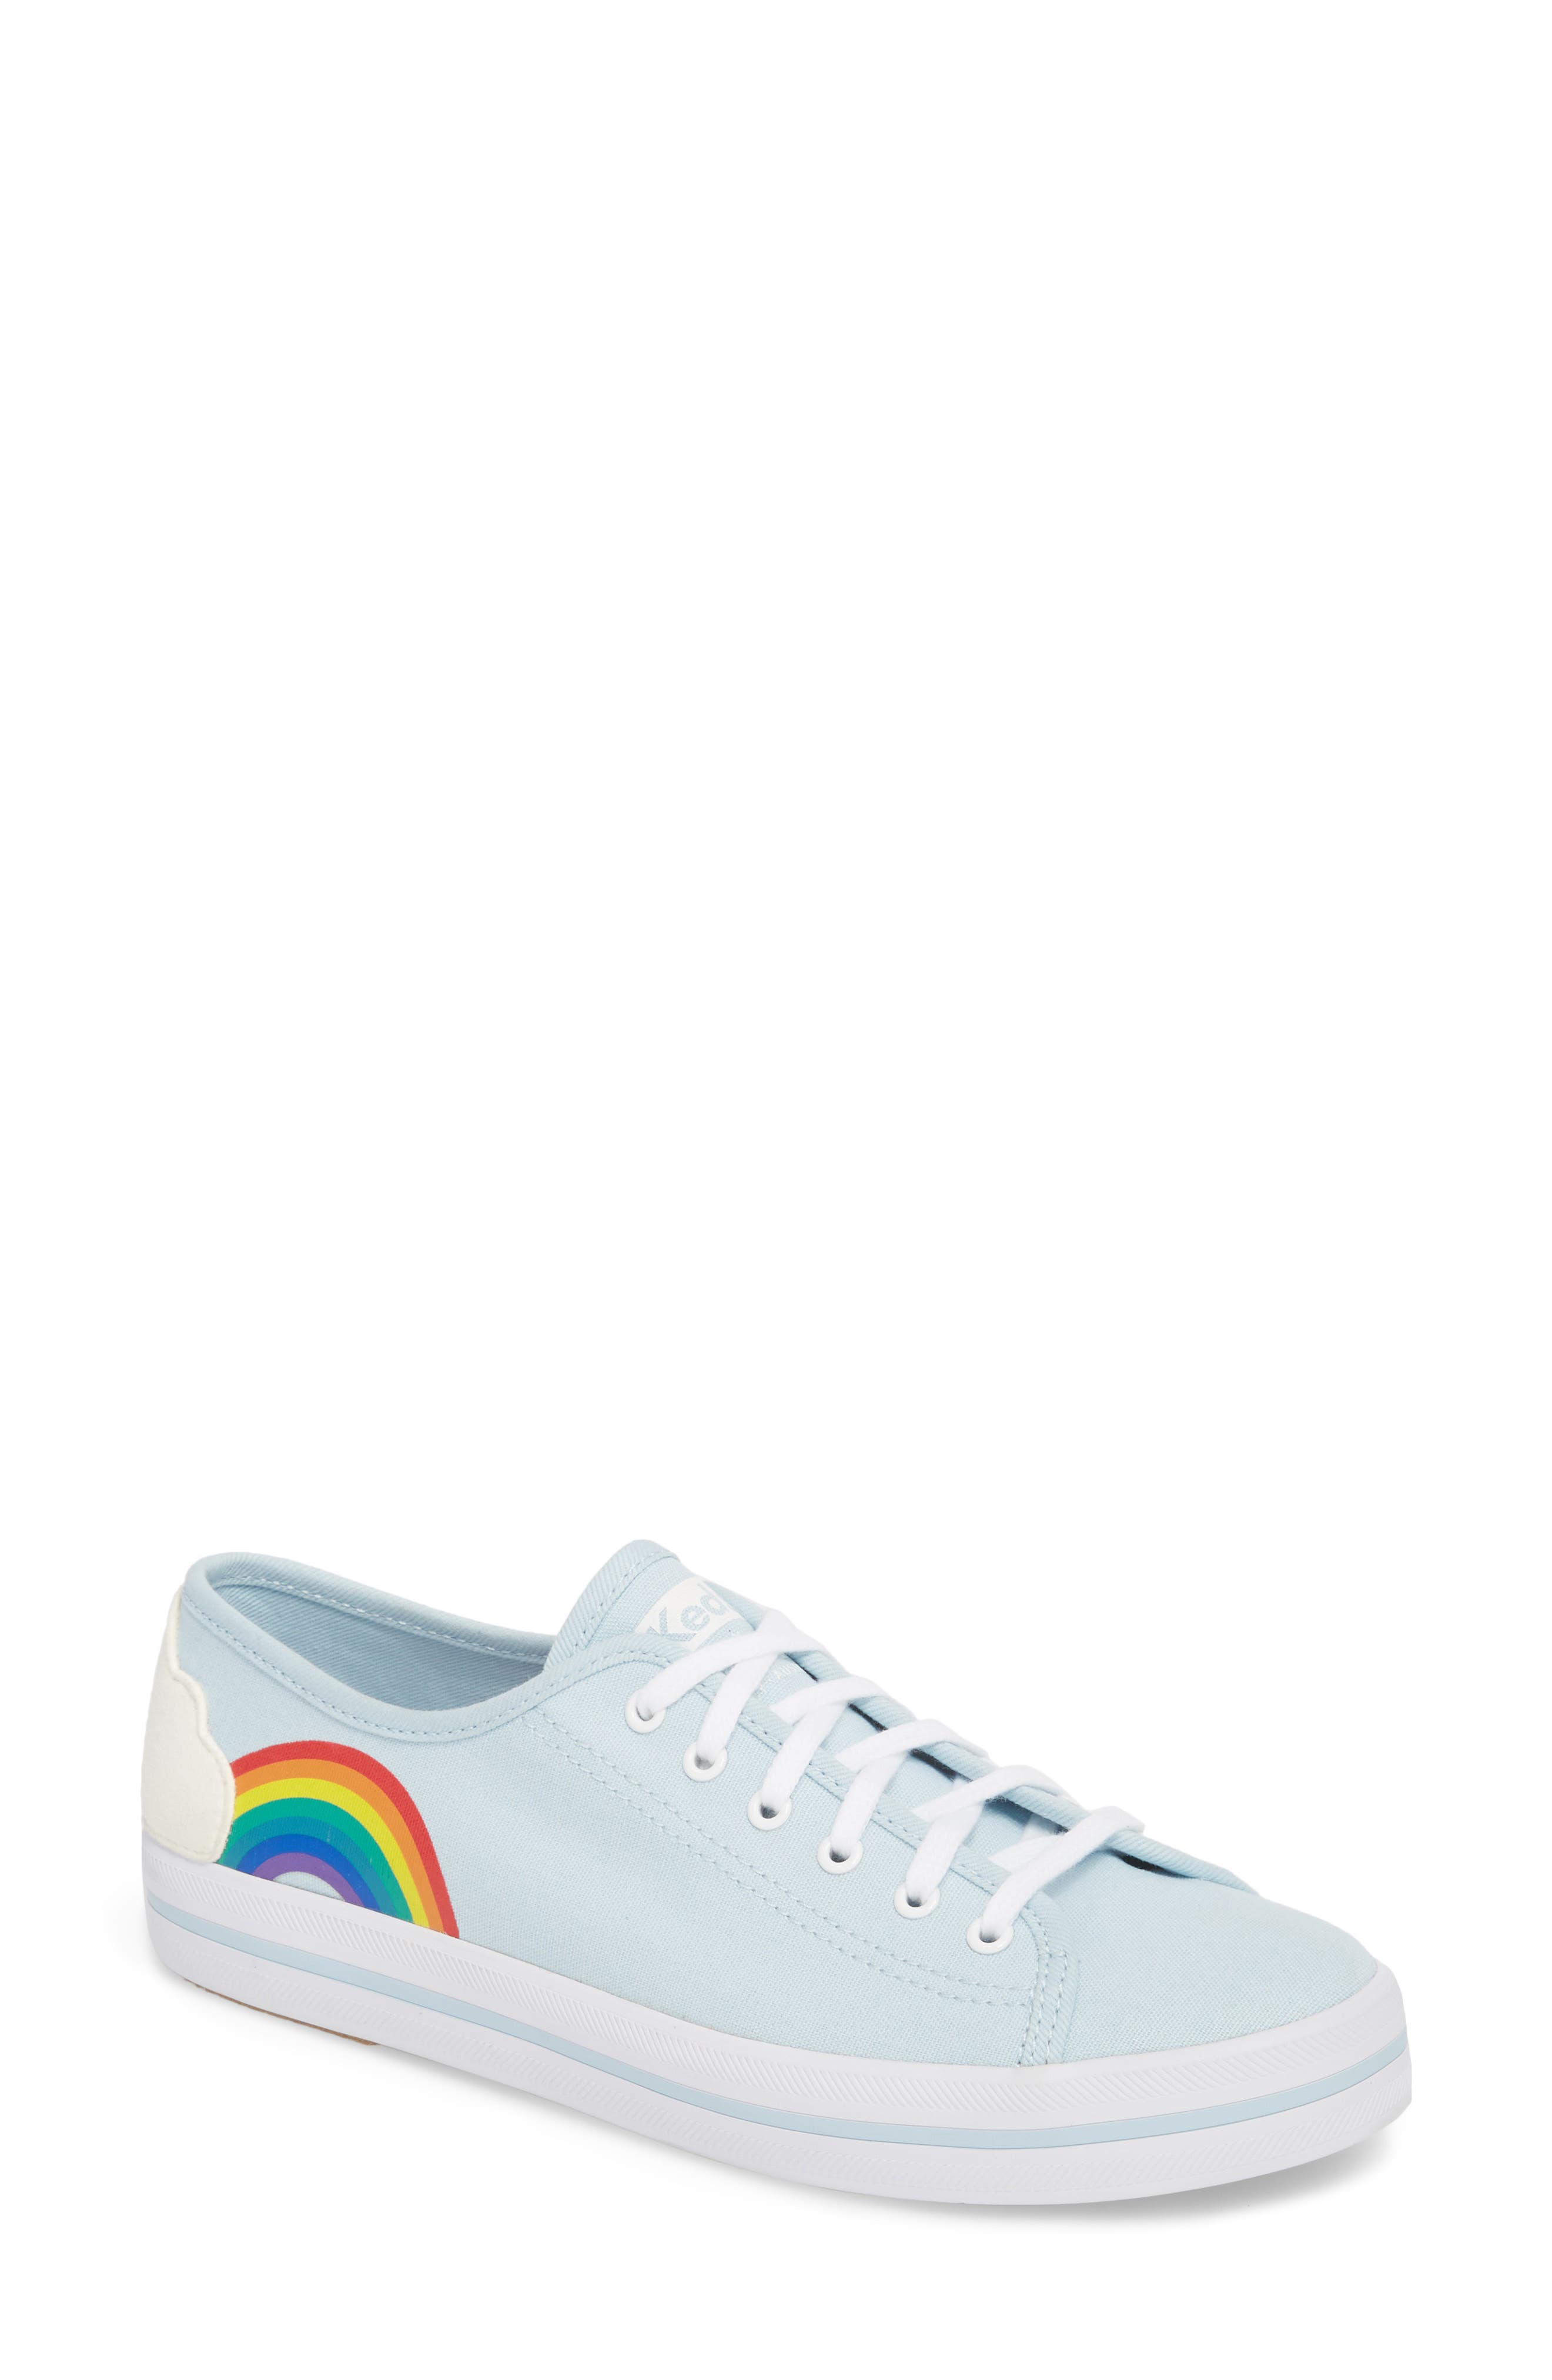 keds rainbow shoes